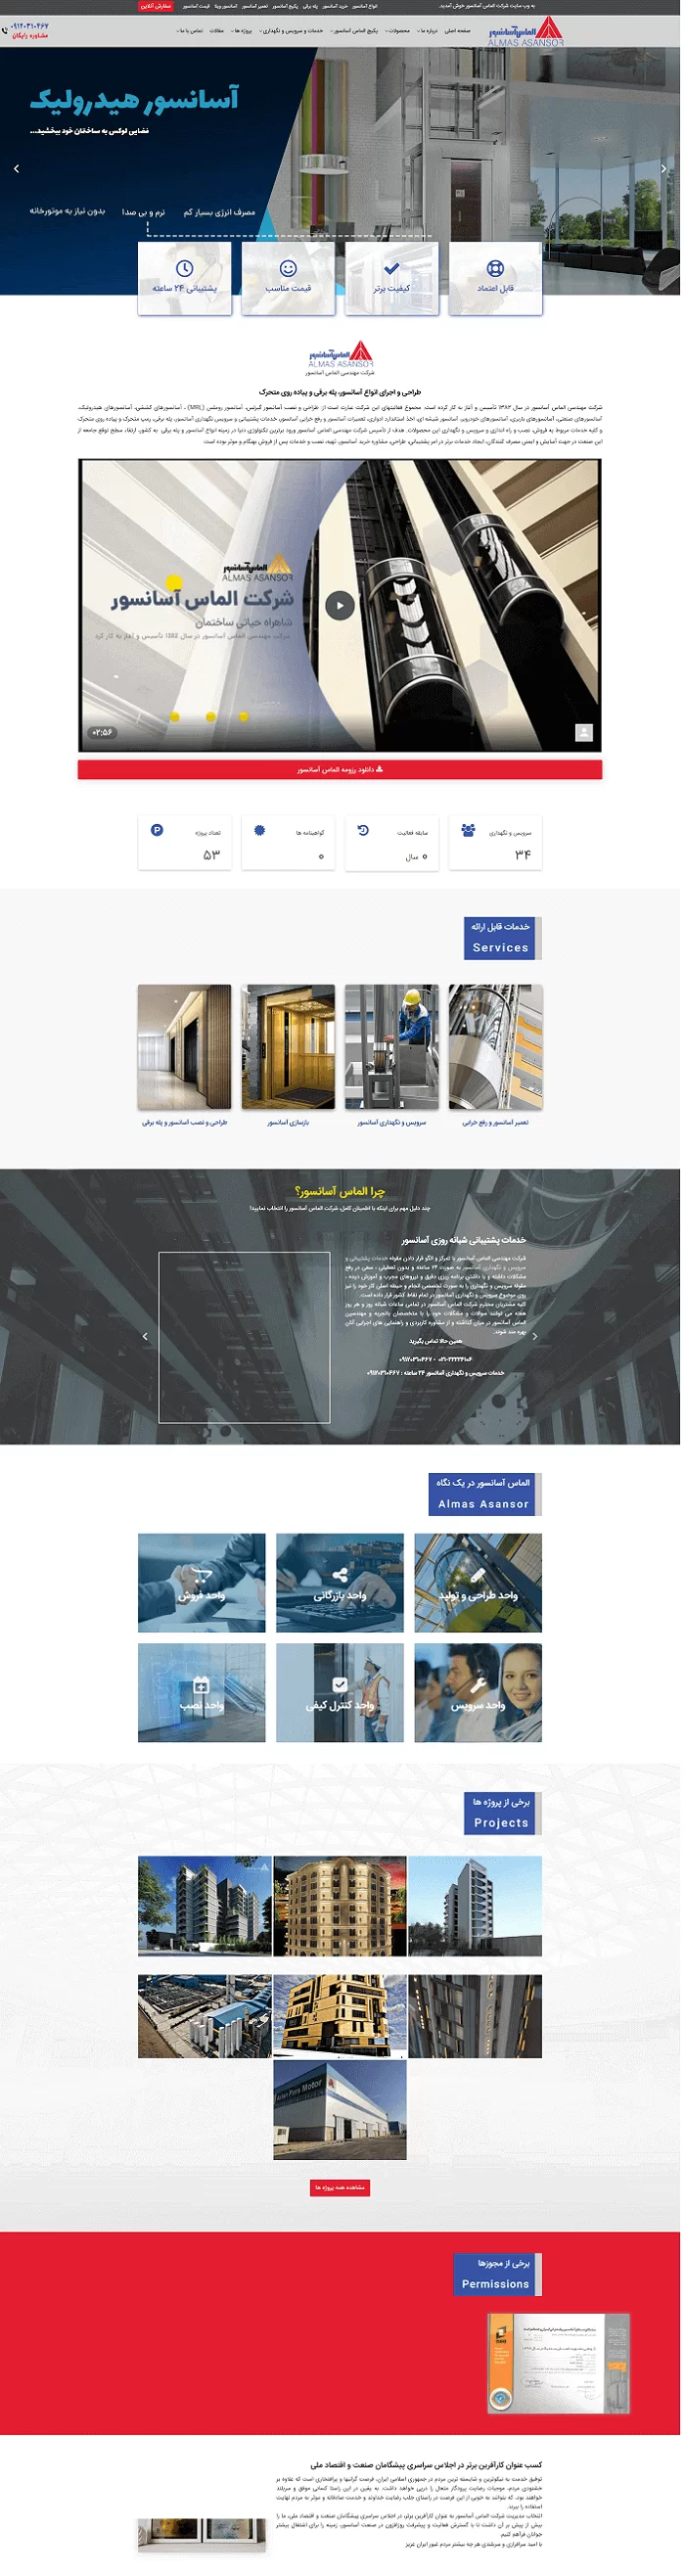 طراحی سایت وردپرسی الماس آسانسور